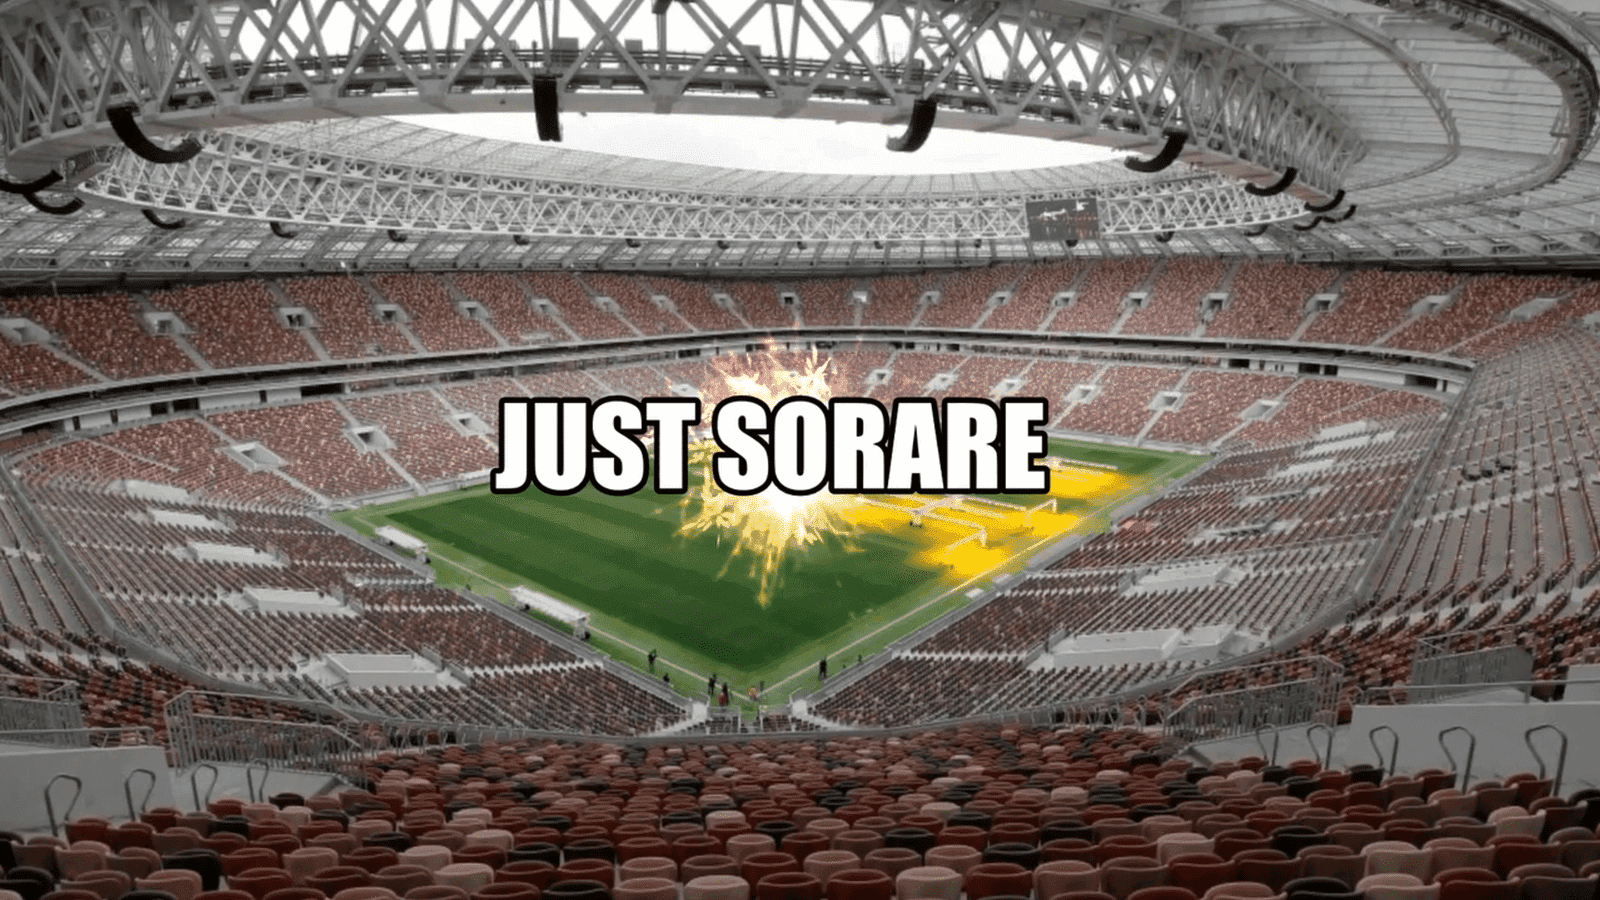 Sorare is een op crypto gebaseerd fantasievoetbalspel dat enorm populair is geworden vanwege het vermogen om zowel realistisch vermakelijk als winstgevend te zijn.